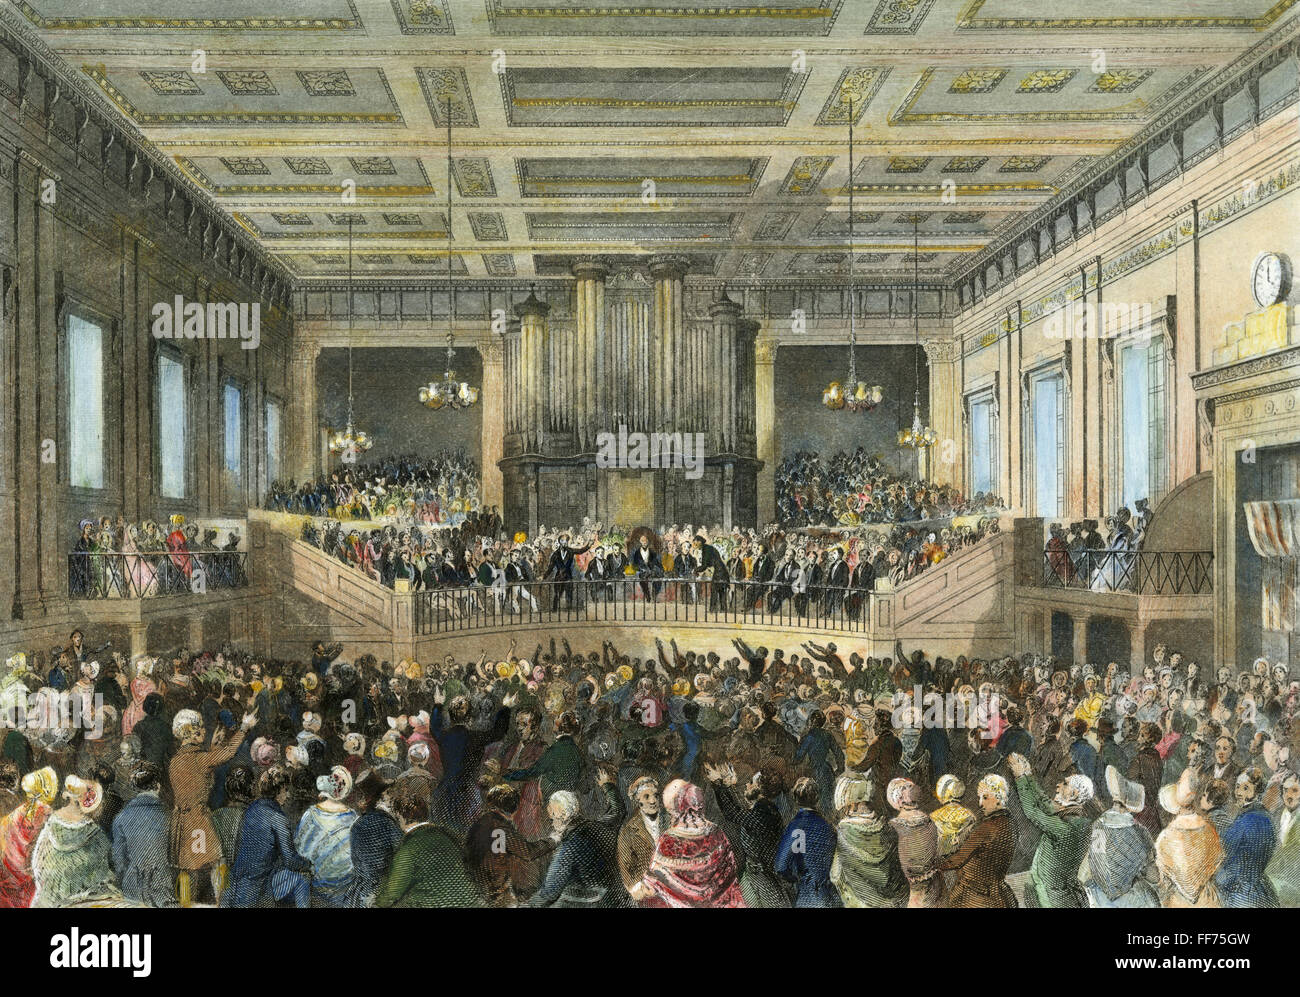 ABSCHAFFUNG CONVENTION, 1840. /nThe Anti-Slavery Society Convention in Exeter Hall, London, 1840. Zeitgenössischer Stahlstich. Stockfoto